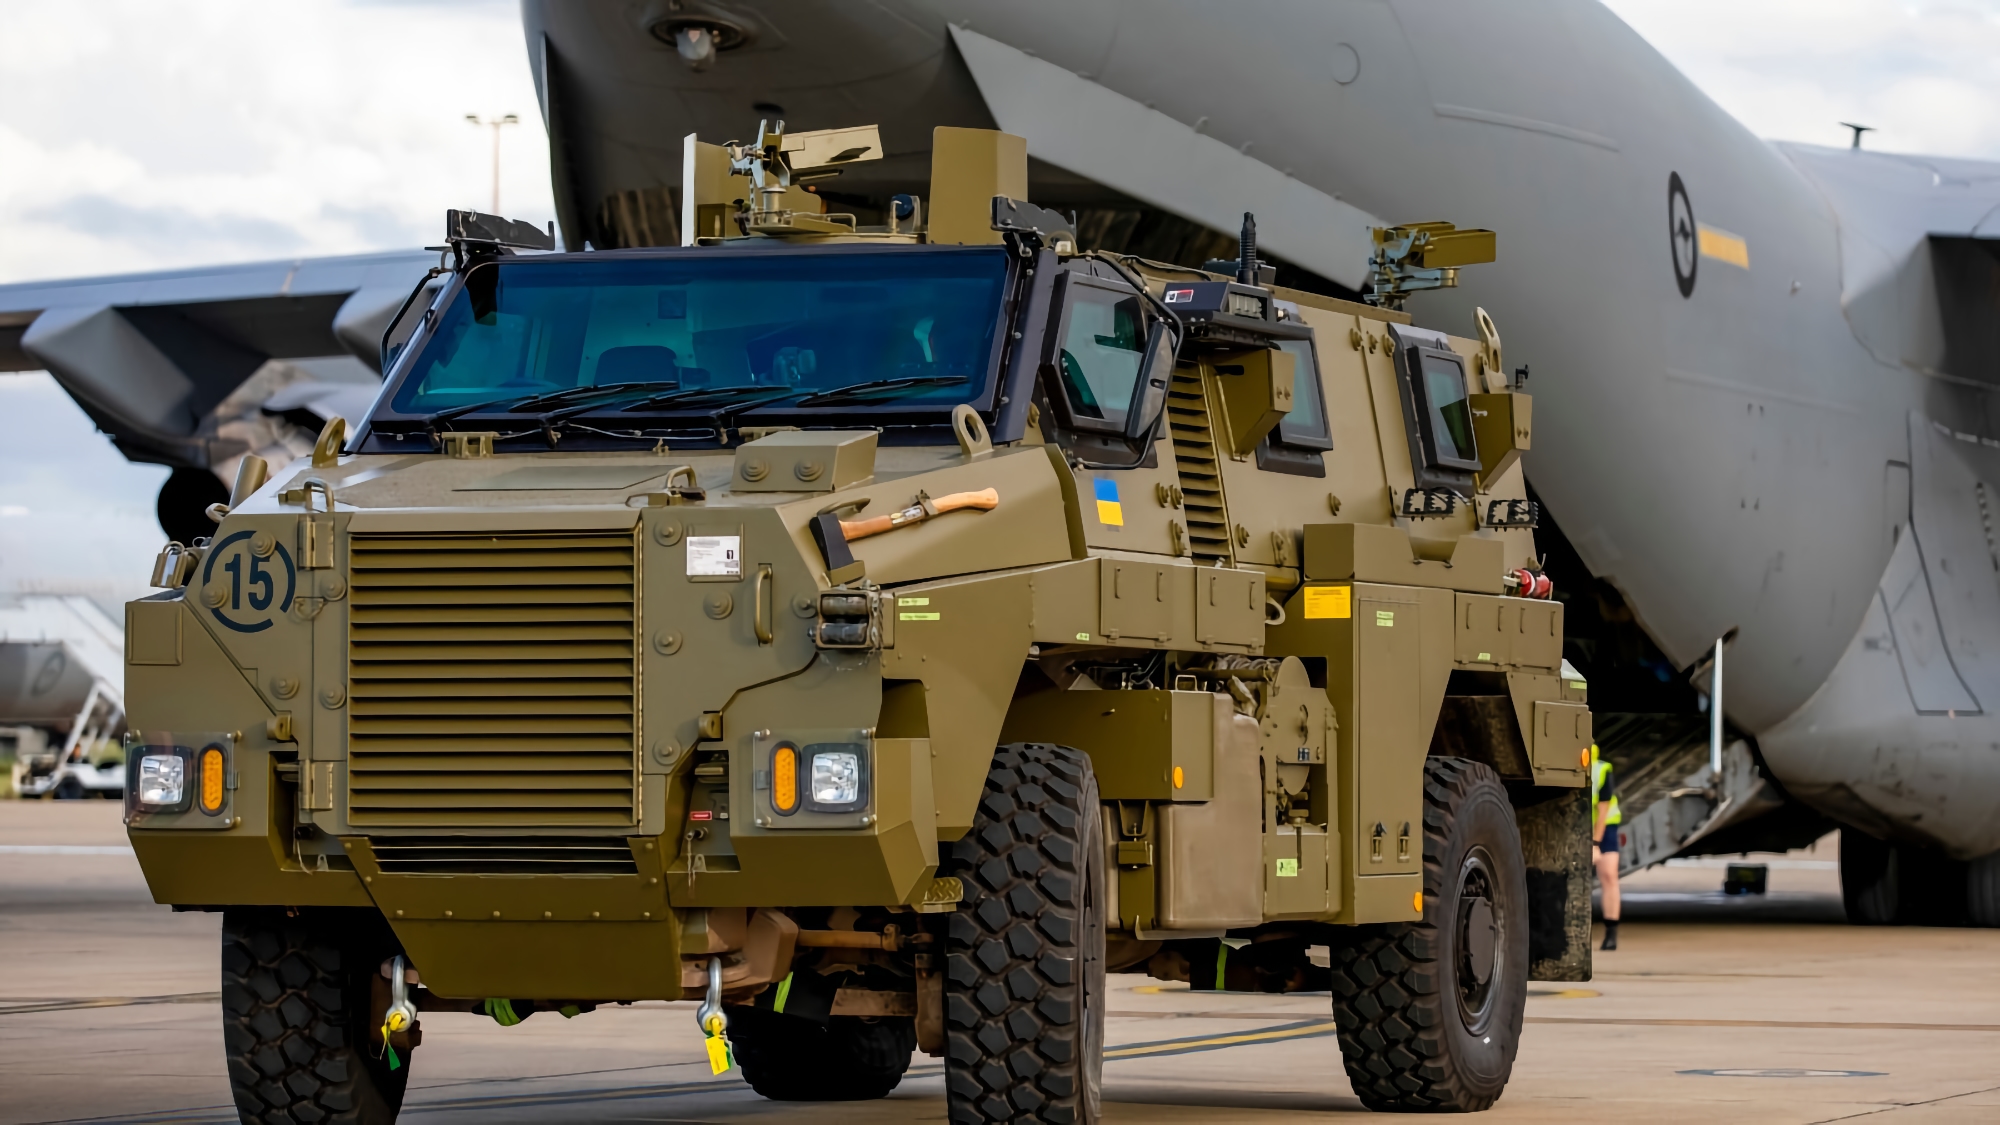 Vehículos blindados Bushmaster, vehículos blindados de transporte de personal M113 y equipo médico: Australia transferirá un nuevo lote de ayuda militar a Ucrania